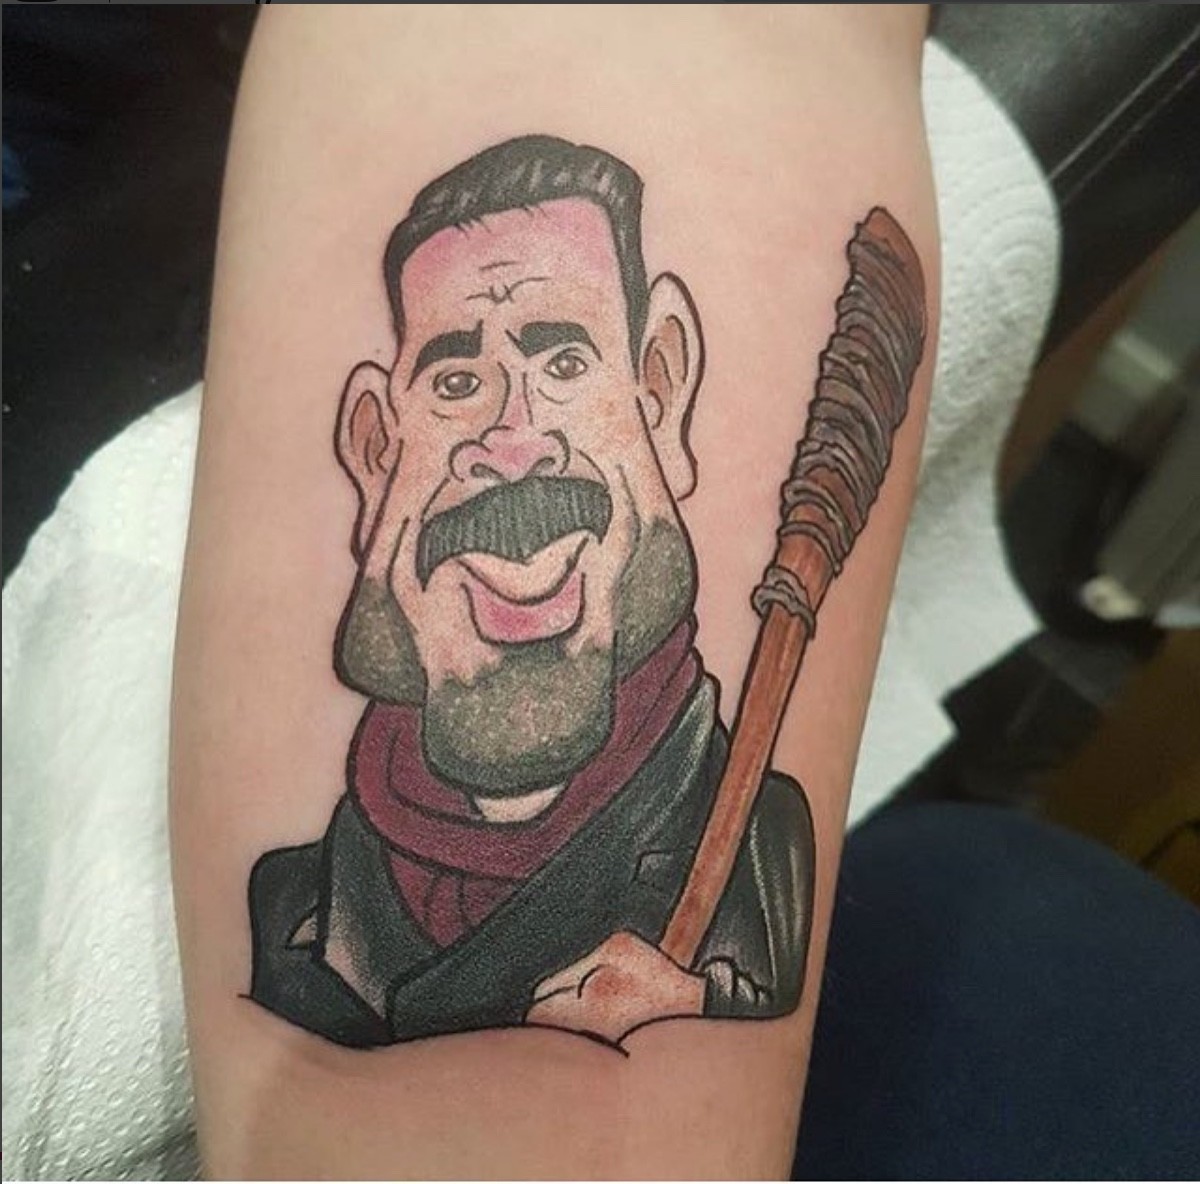 A fan got a tattoo!